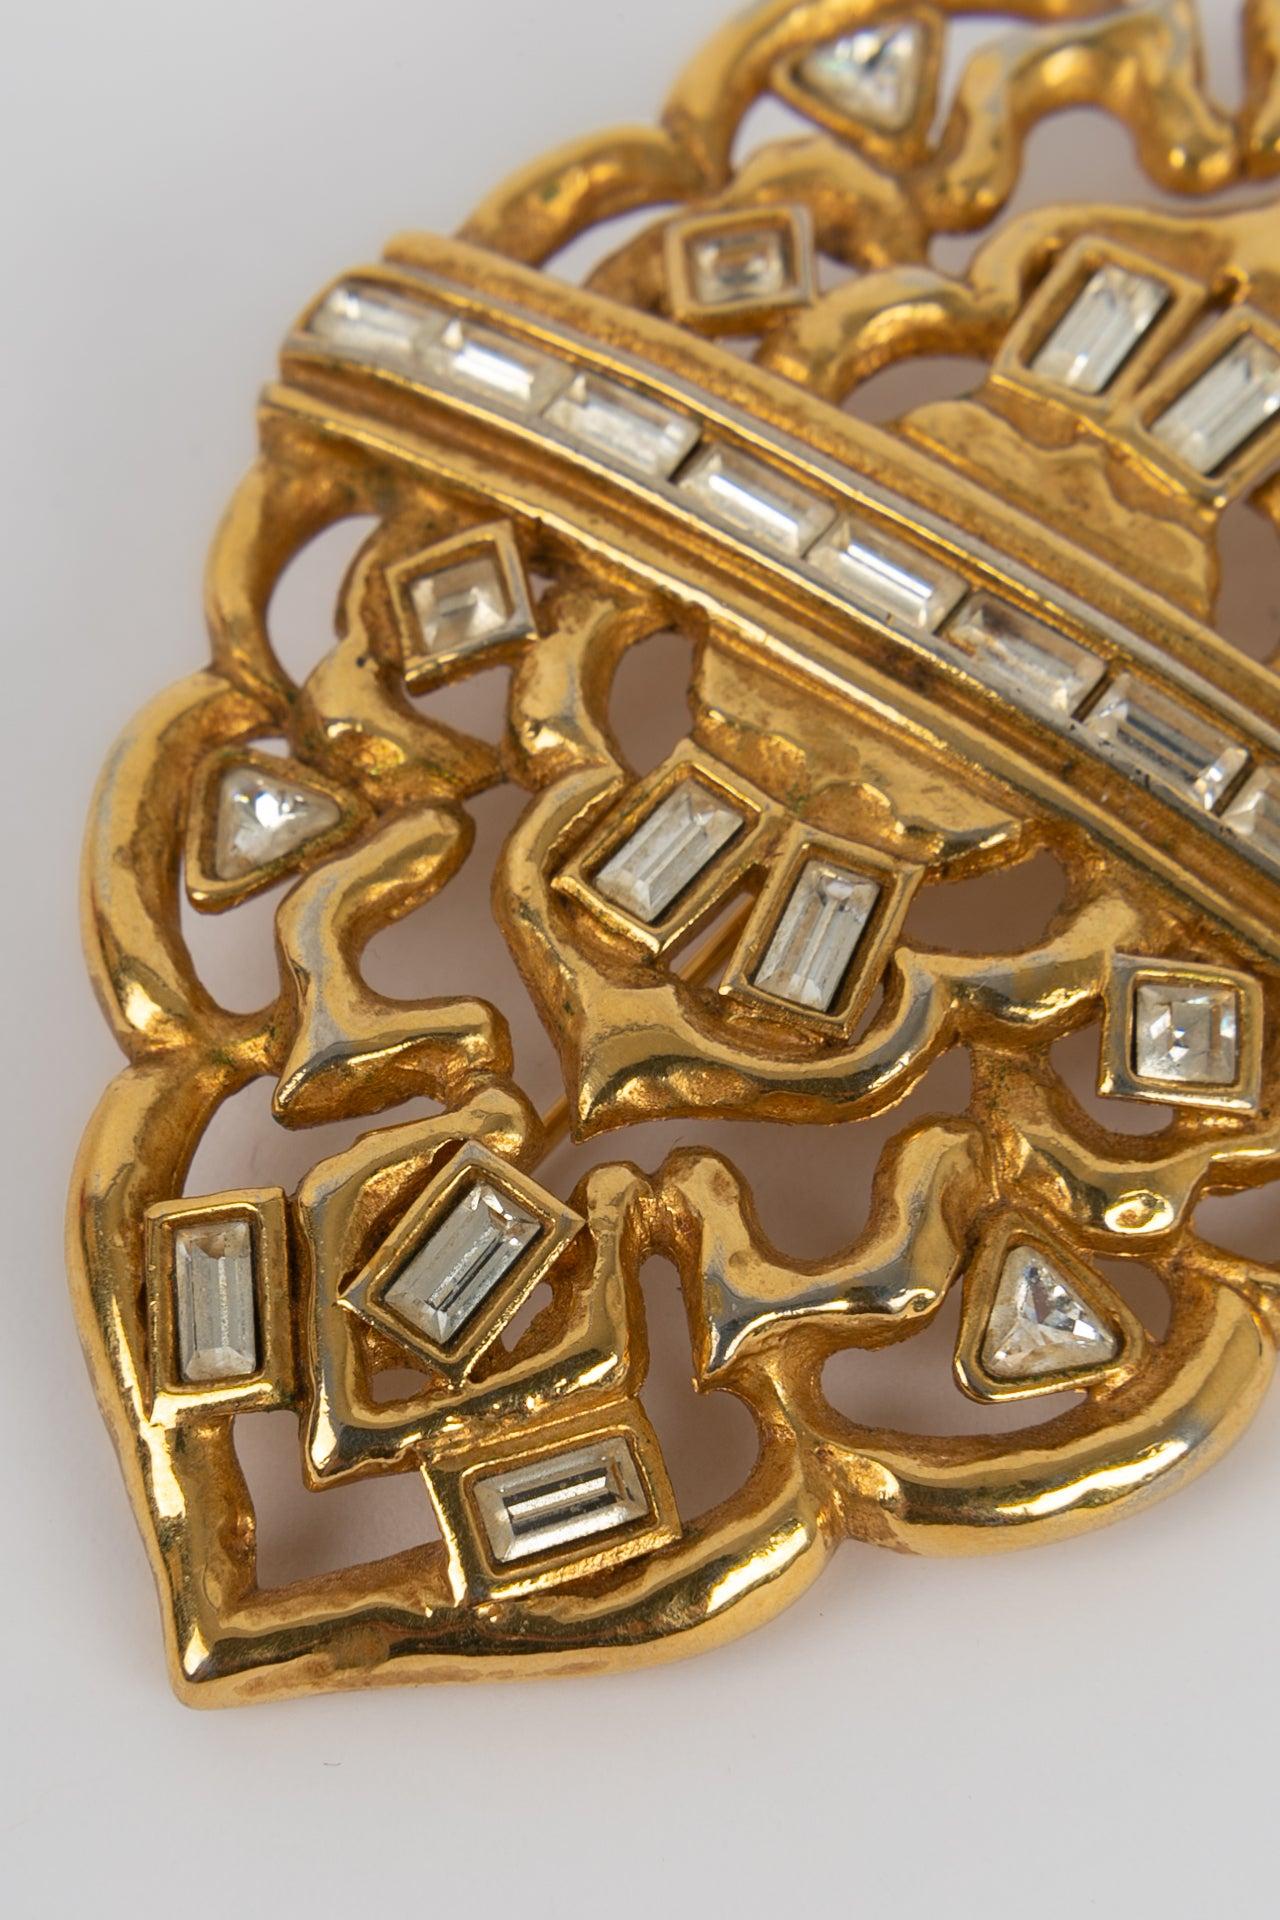 Yves Saint Laurent - (Made in France) Broche ajourée en métal doré avec strass.

Informations complémentaires :
Dimensions : 8.5 L.A. cm
Condit : Très bon état.
Numéro de référence du vendeur : BR74